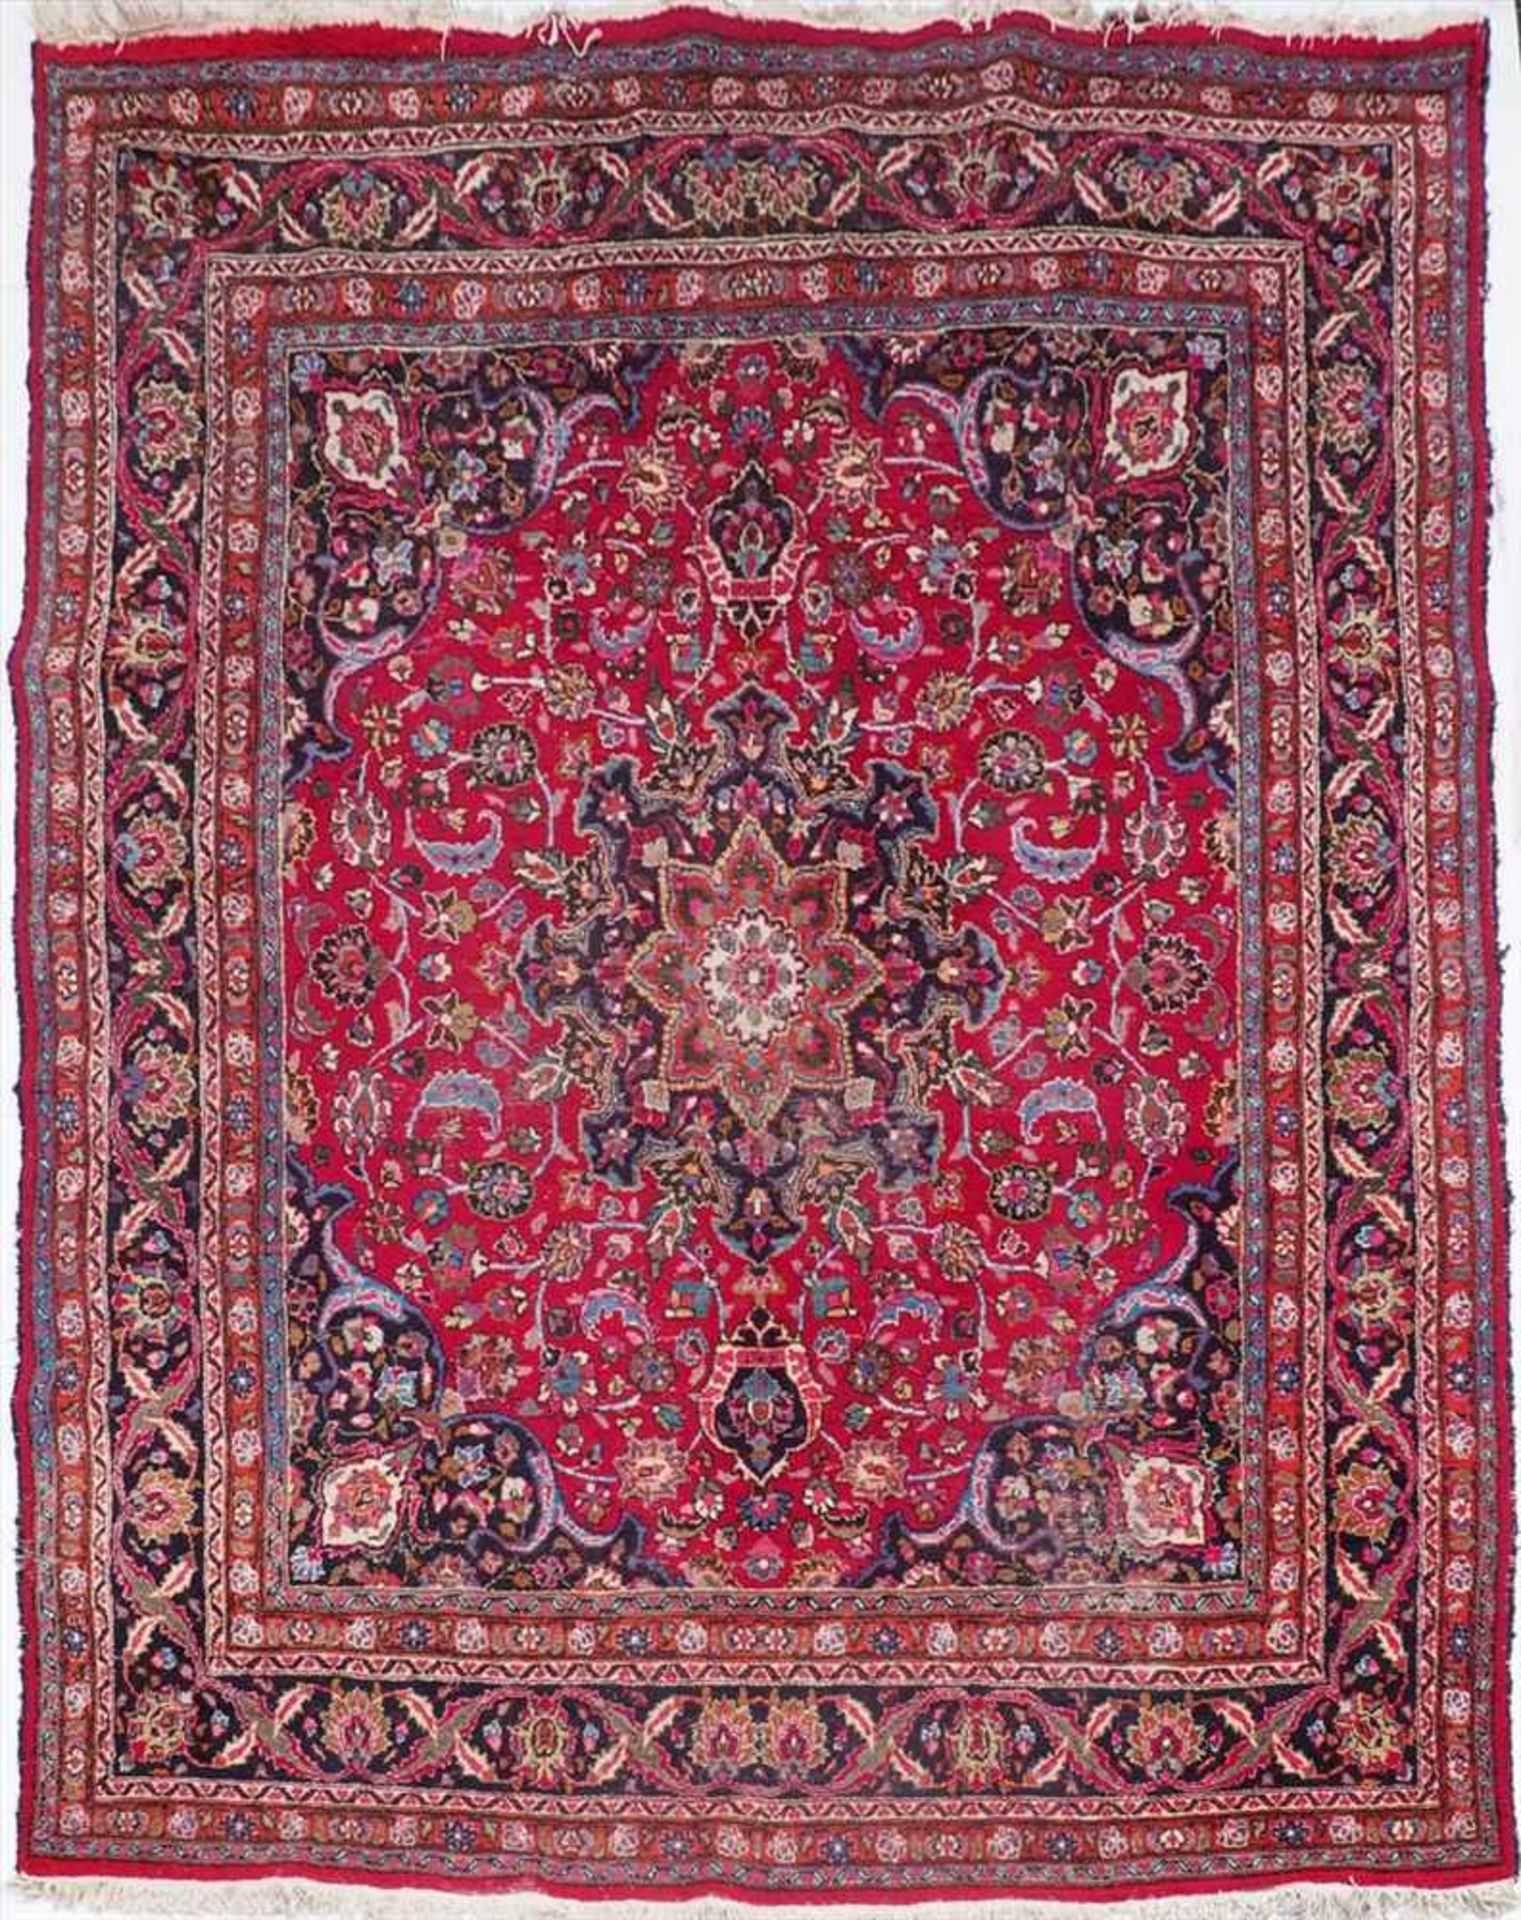 Kerman-HauptteppichRotgrundiges Hauptfeld mit symmetrischen Blütenmotiven, sternförmiges, dreifach